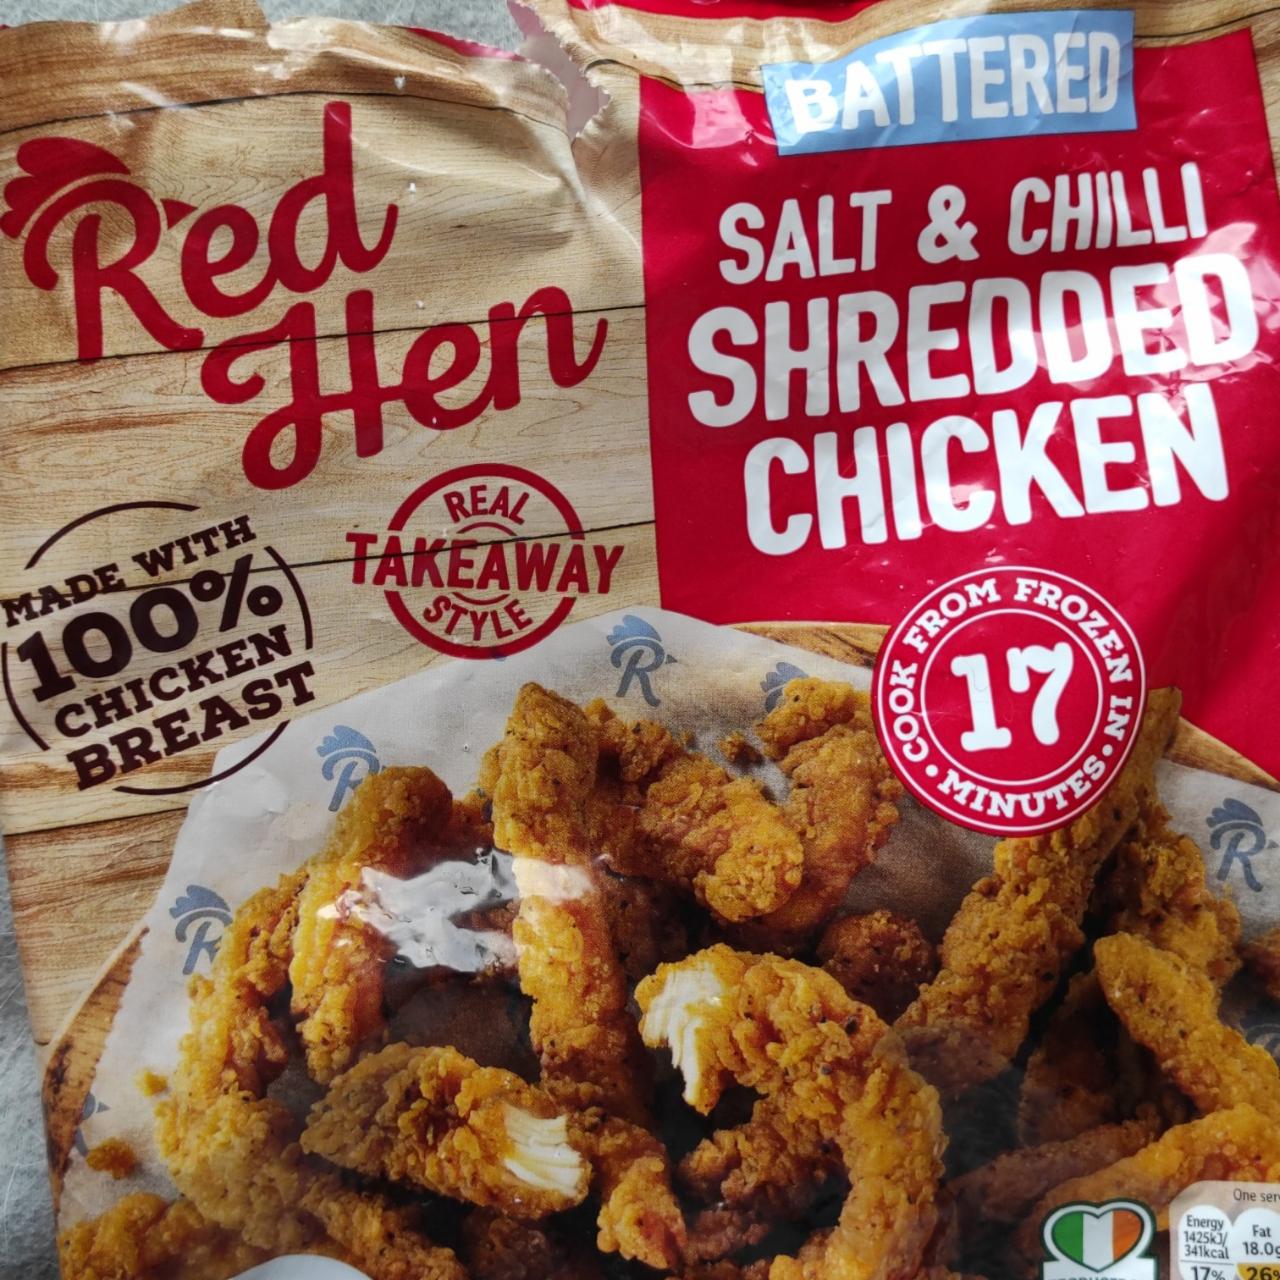 Fotografie - Red Hen Battered Salt & Chilli Shredded Chicken